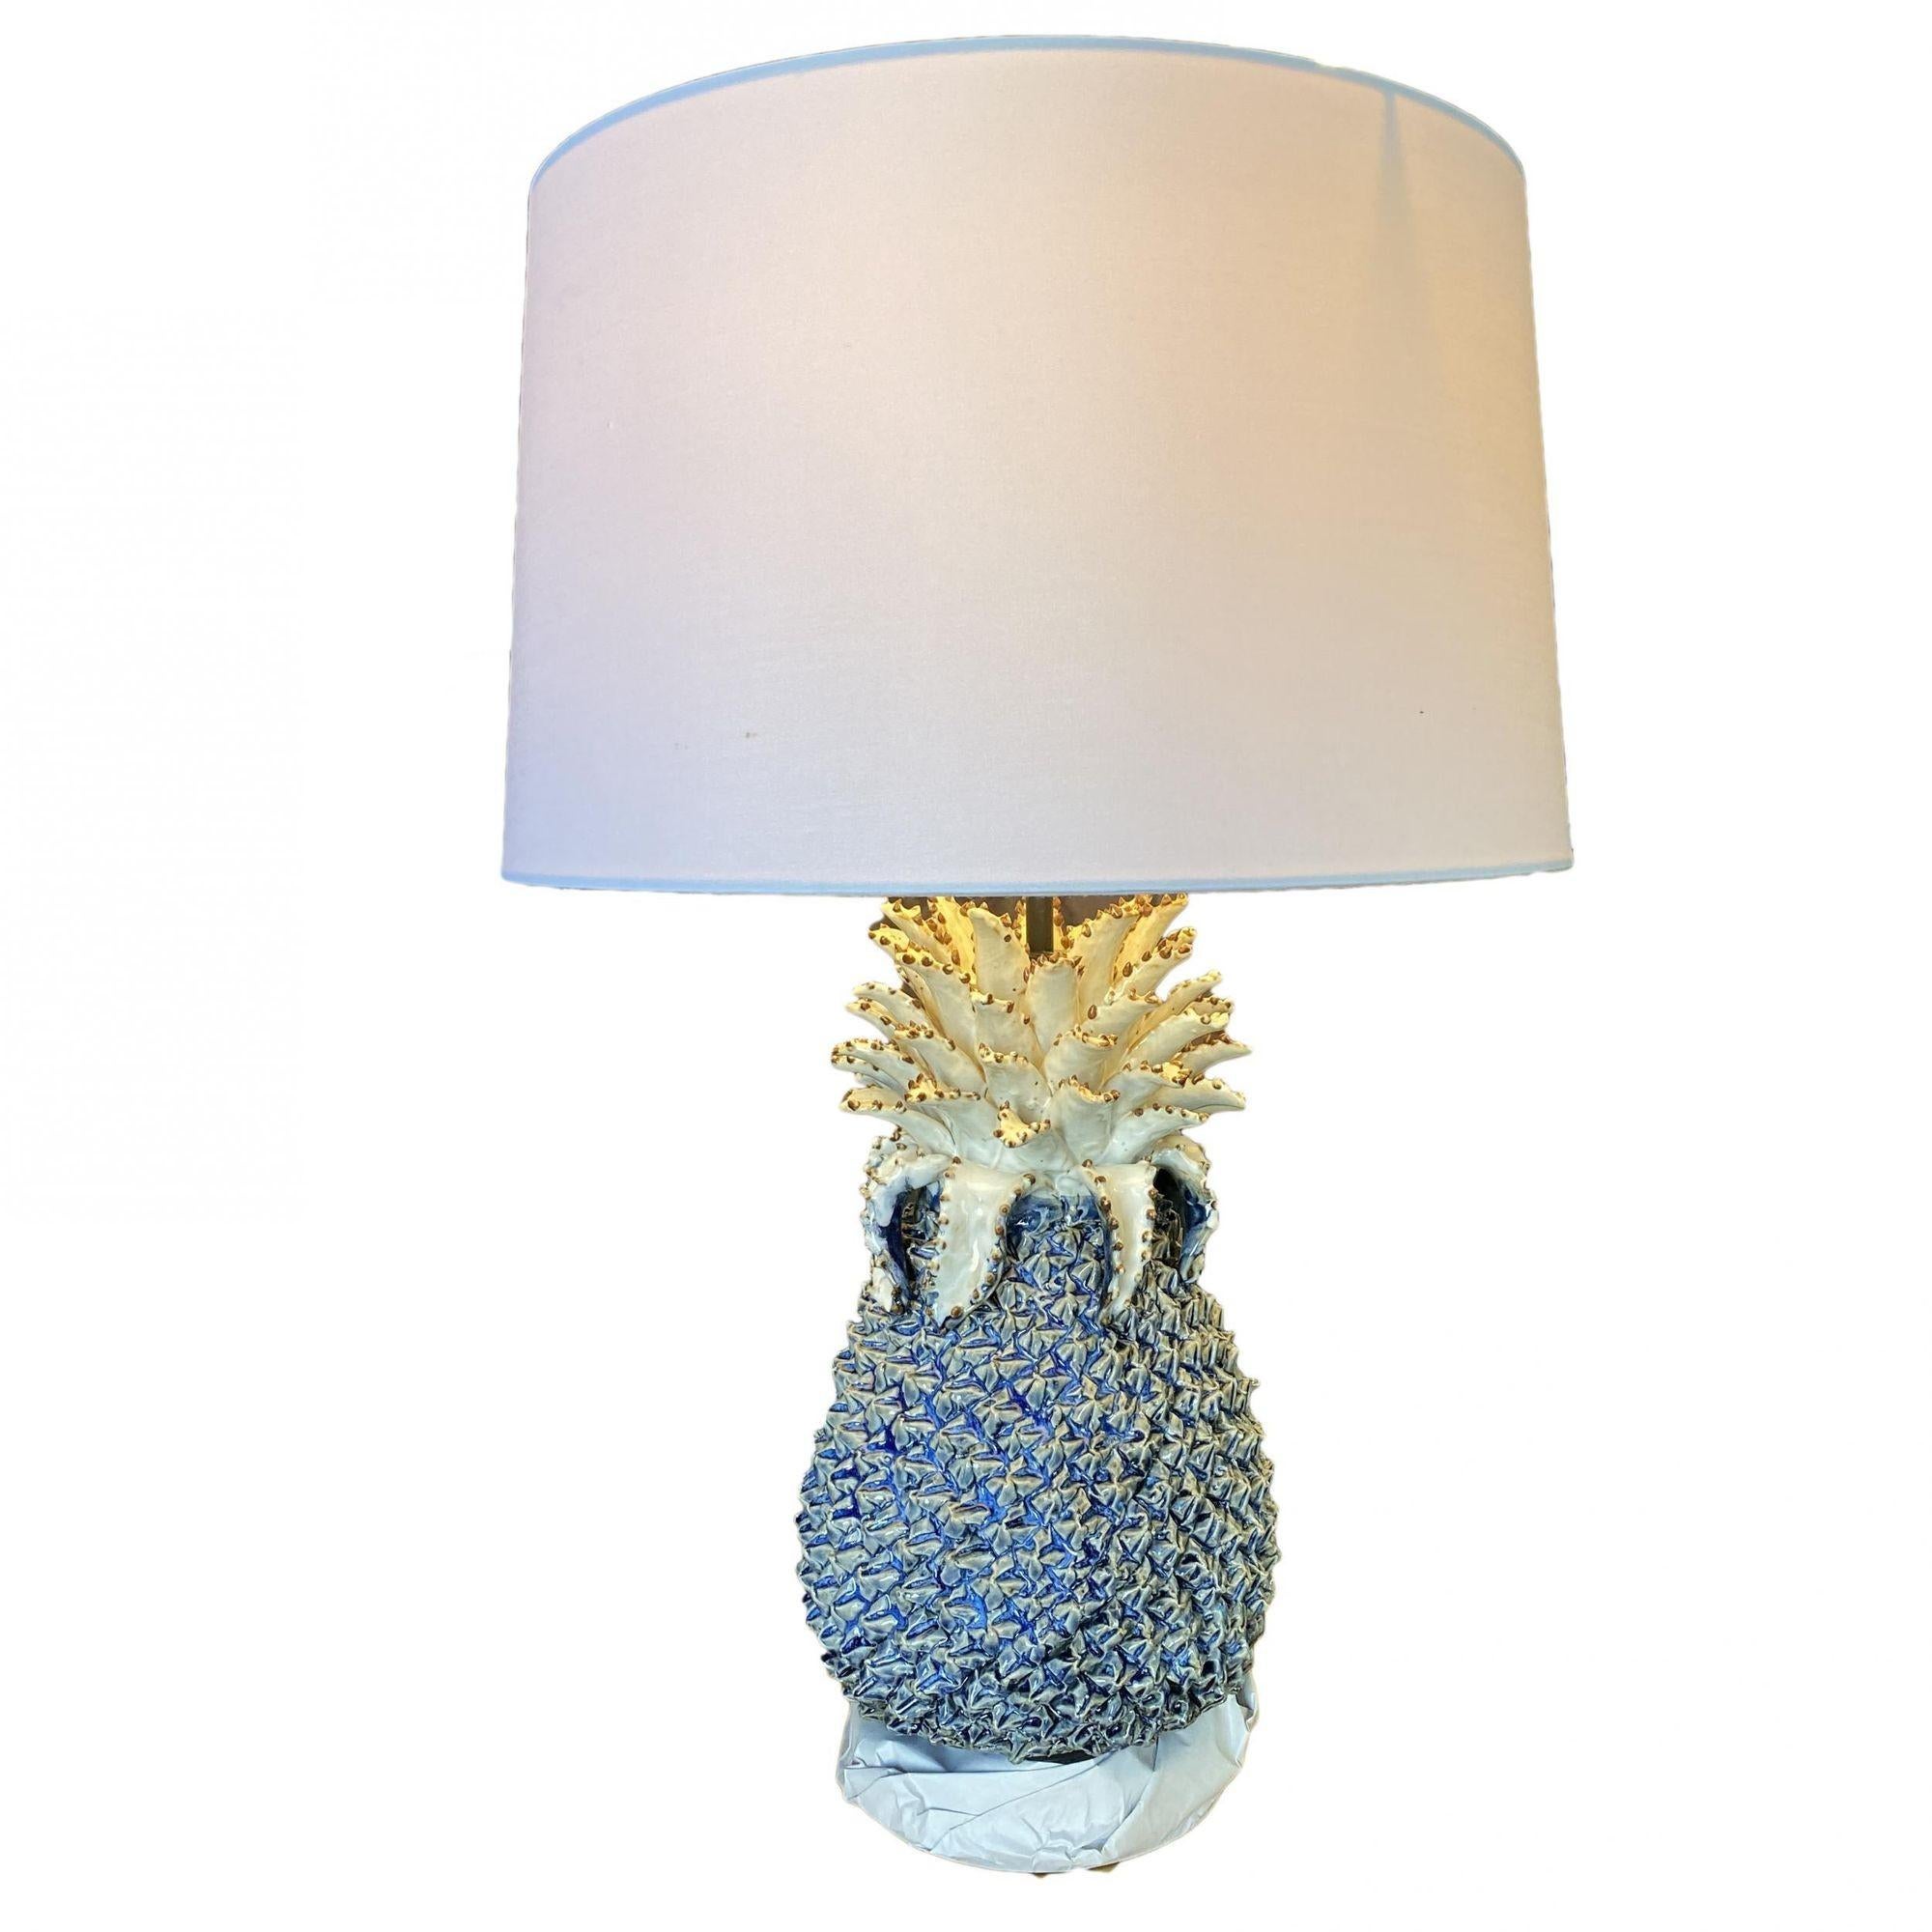 Nouvelle lampe à pomme de pin en céramique peinte à la main avec grand abat-jour blanc et base en lucite.

Lampe et abat-jour : 21.5